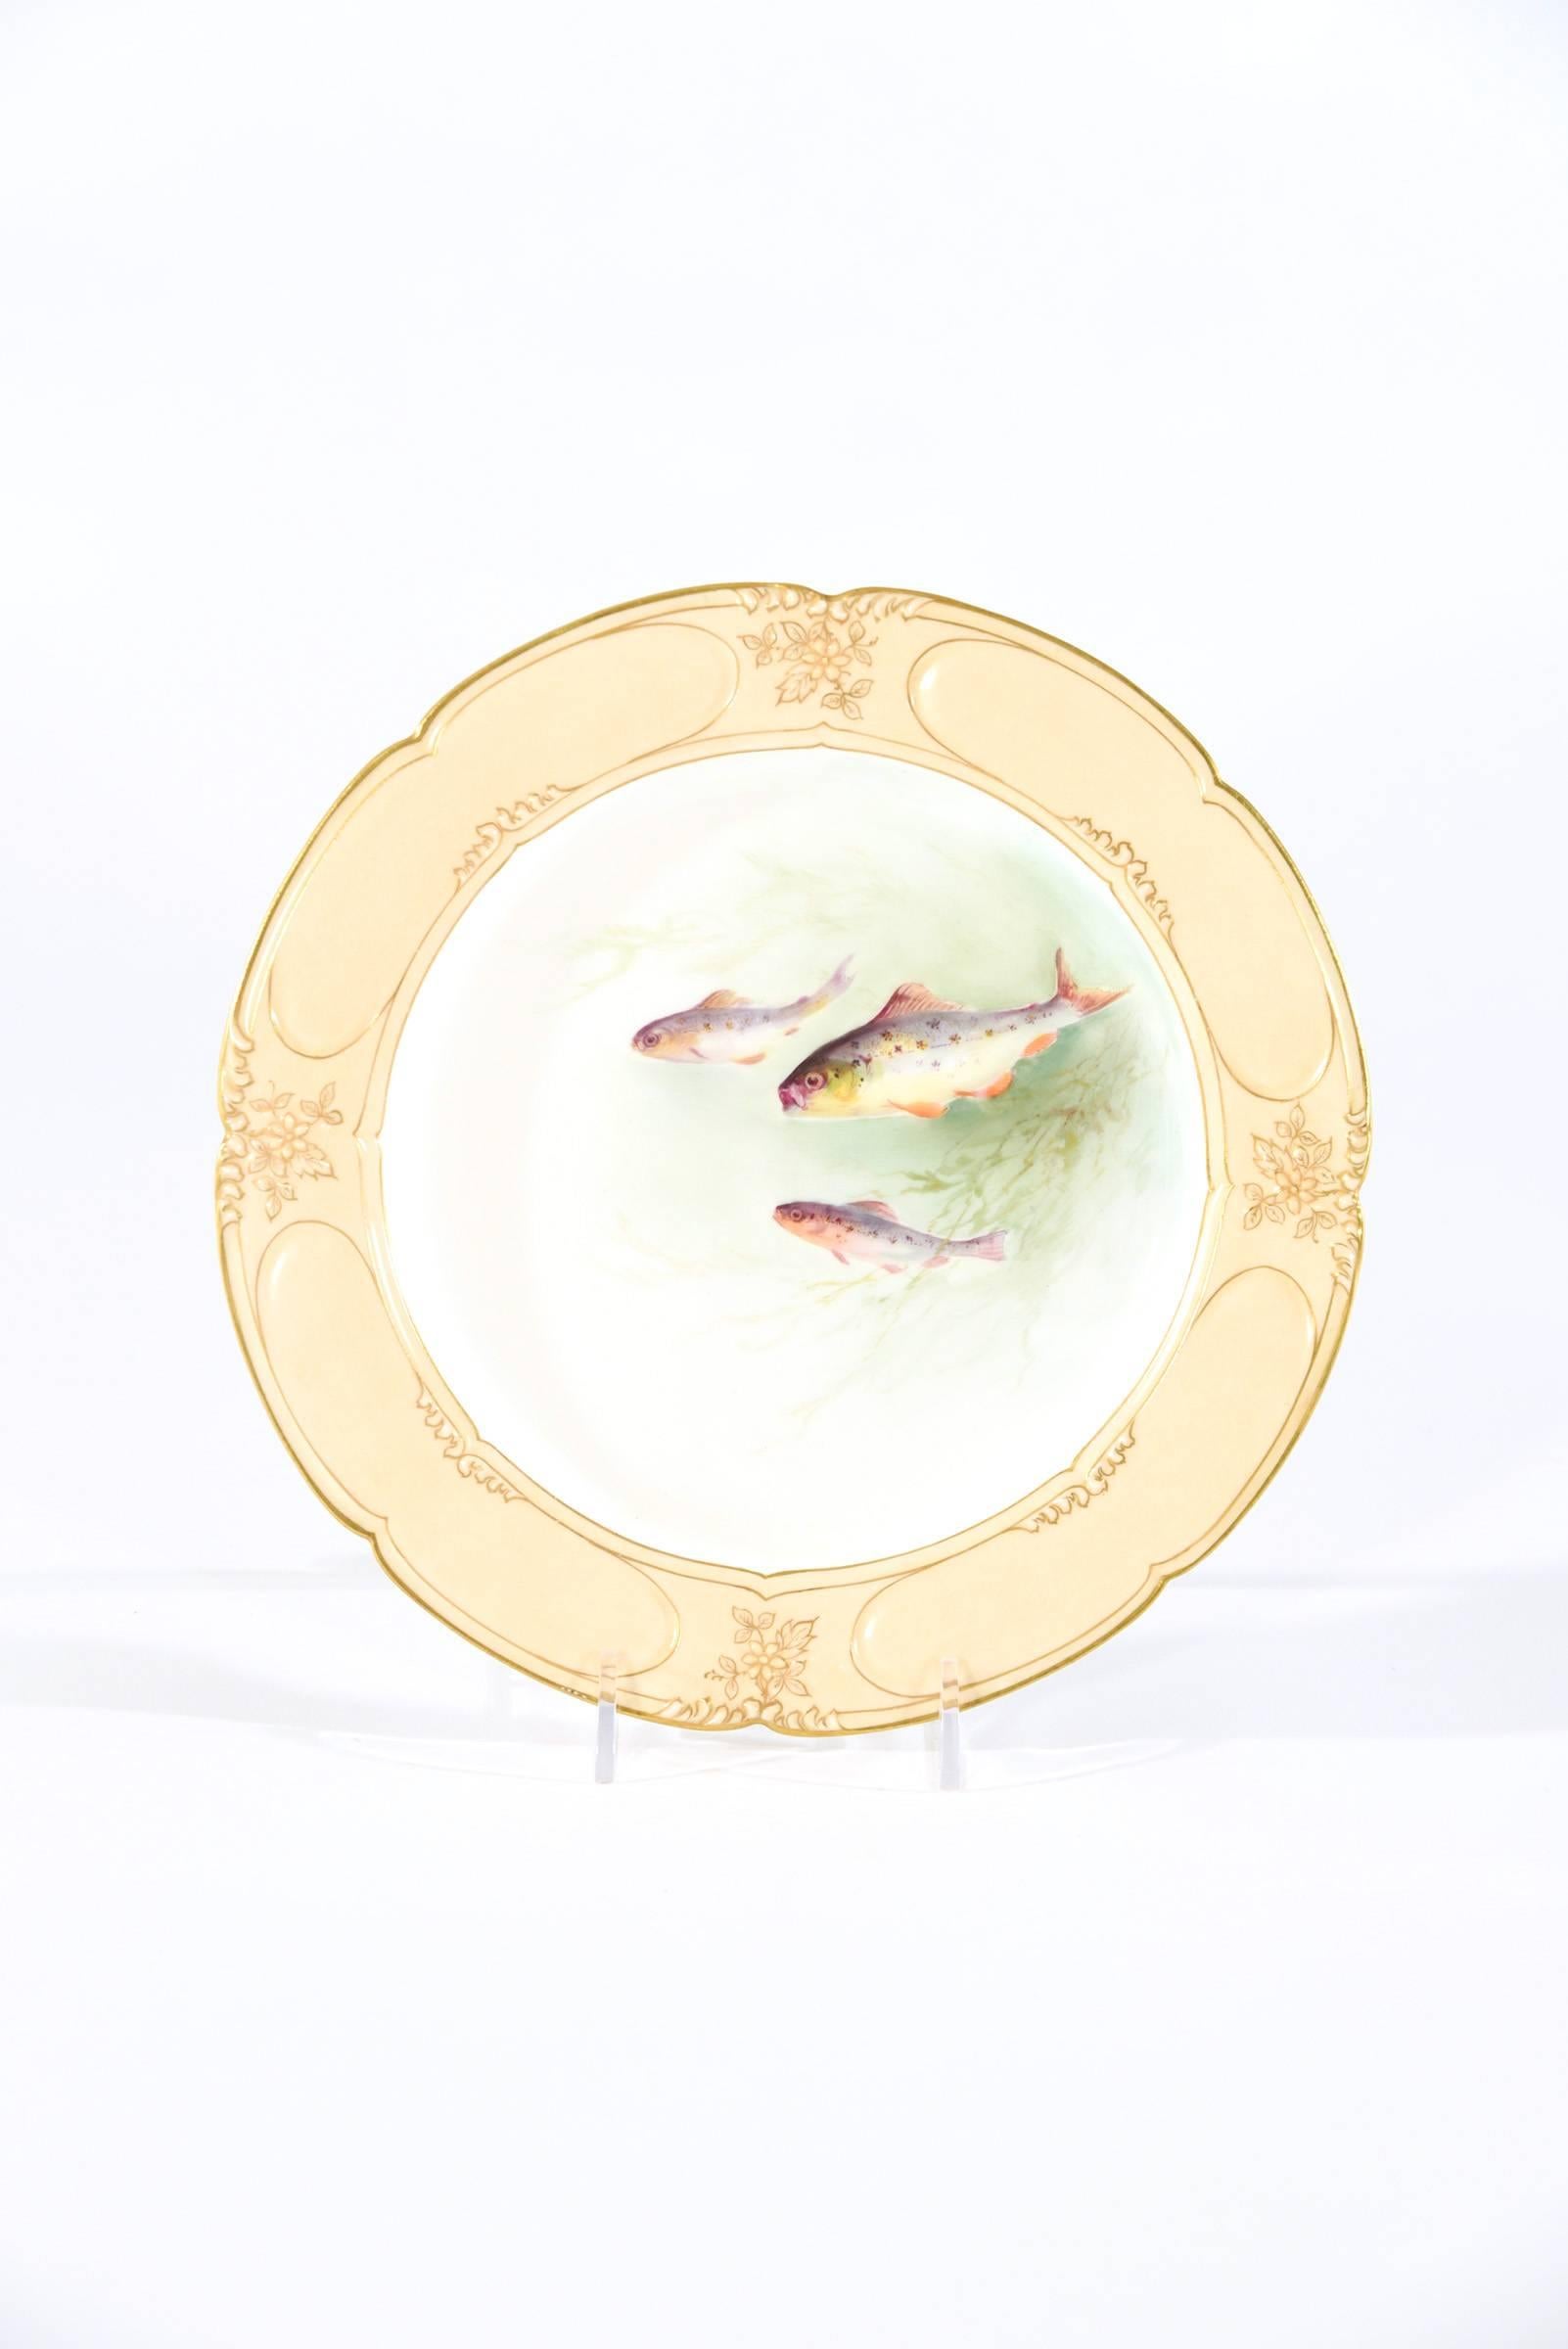 Cet ensemble de 12 assiettes Doulton Burslem date des années 1890 et est décoré dans le style du Mouvement esthétique. Chaque assiette est peinte à la main de manière unique avec différentes scènes sous-marines de poissons en mouvement dans leur